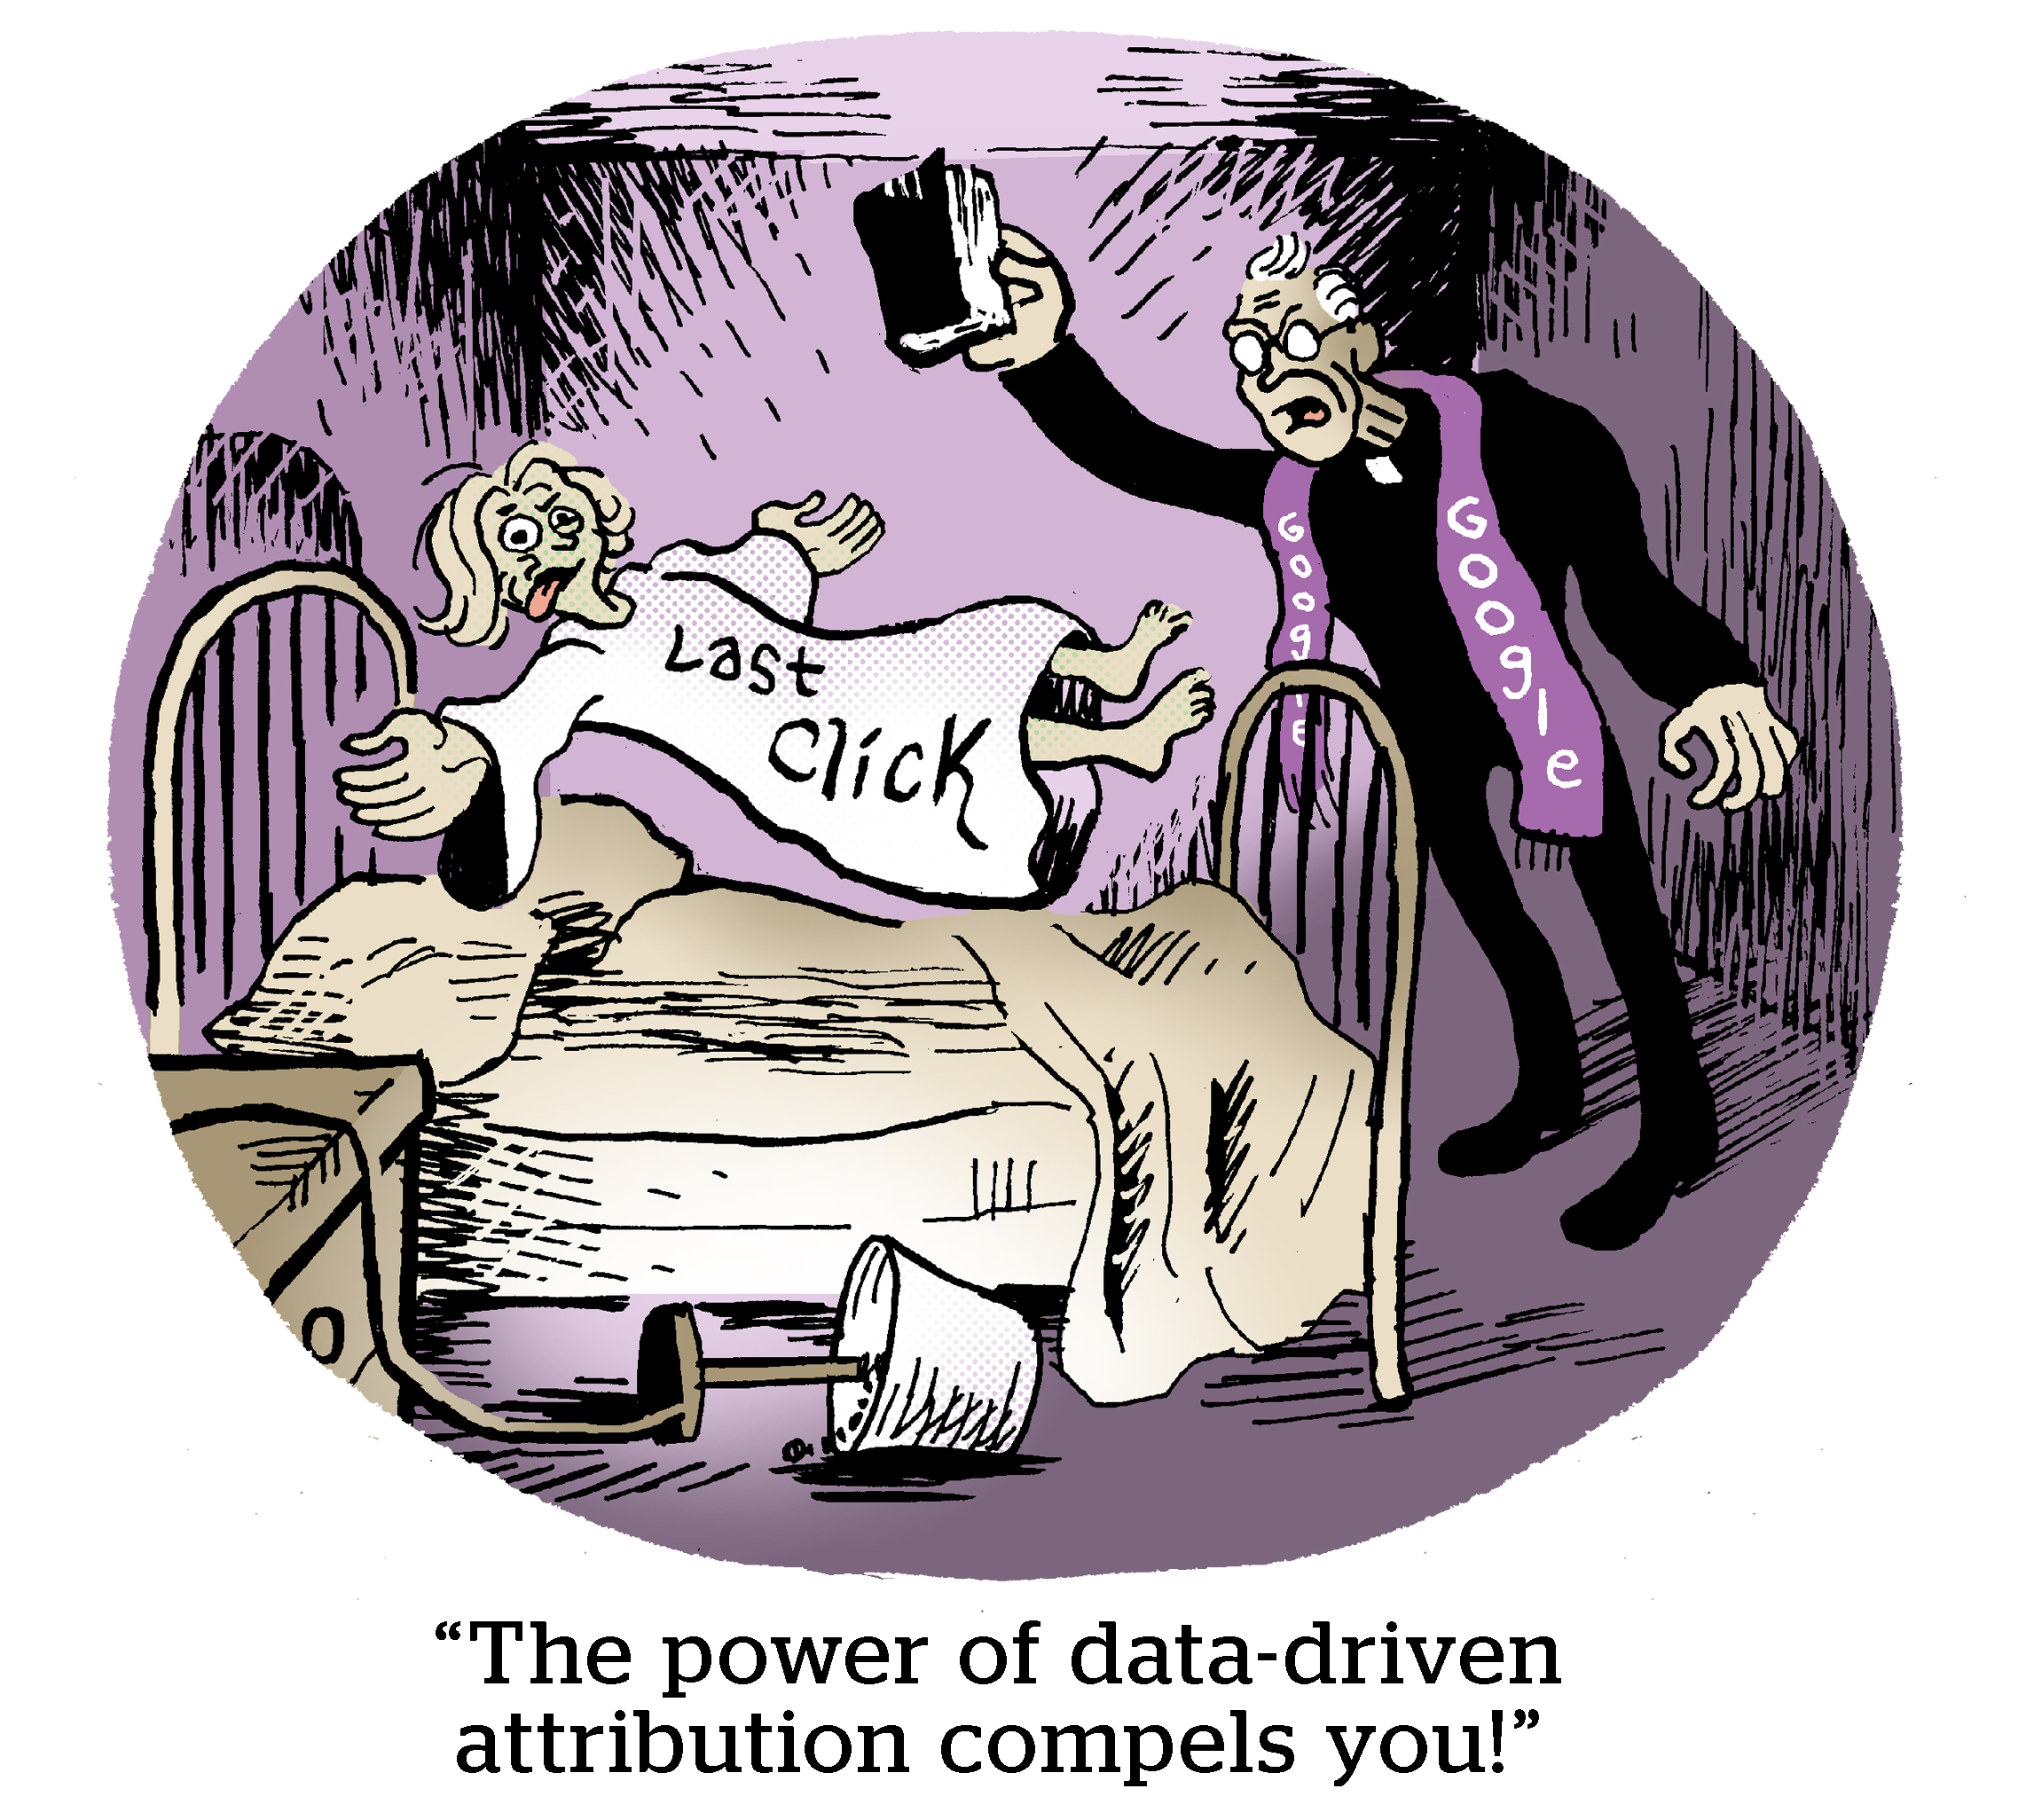 漫画：数据驱动归因的力量迫使您。”